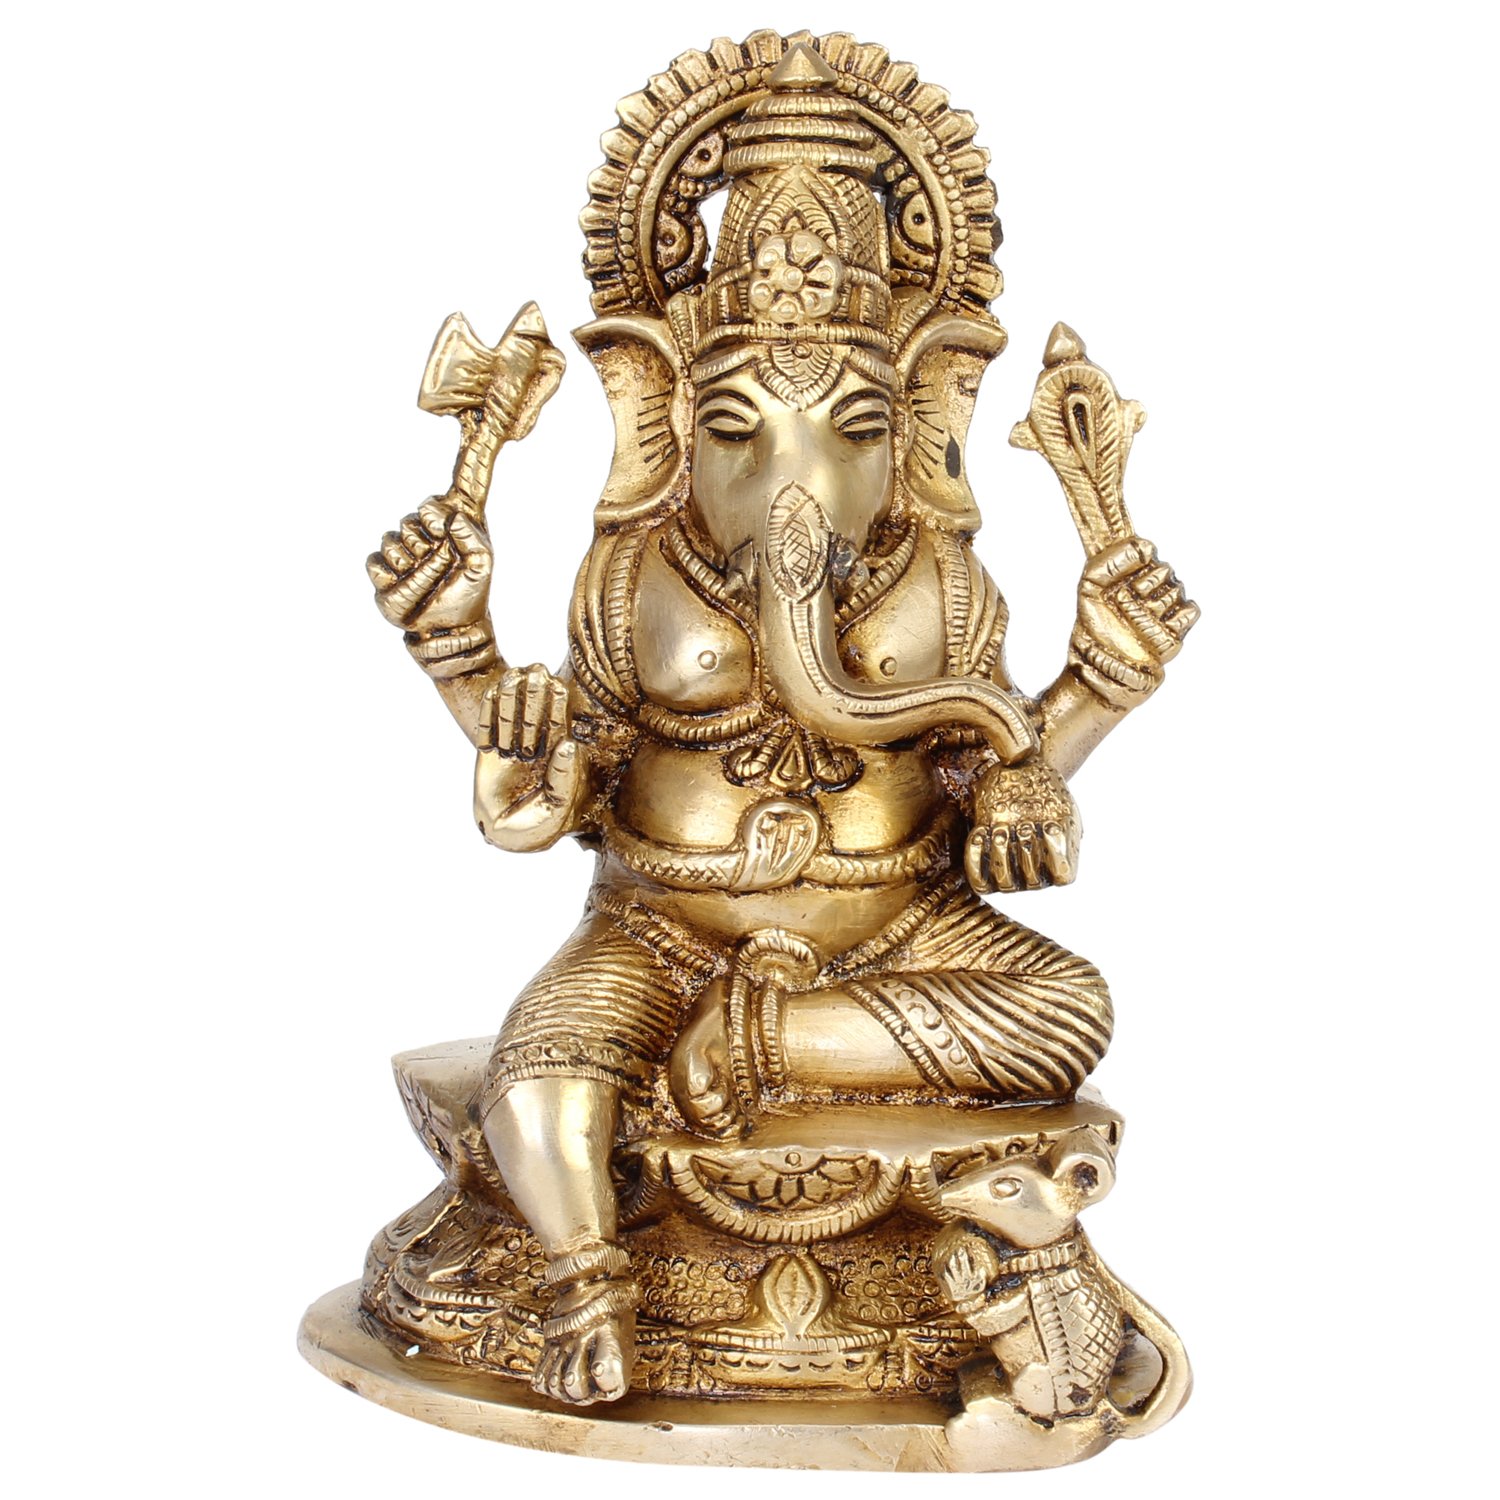 Lord Ganesh Puja Idol : Shop for Prosperity